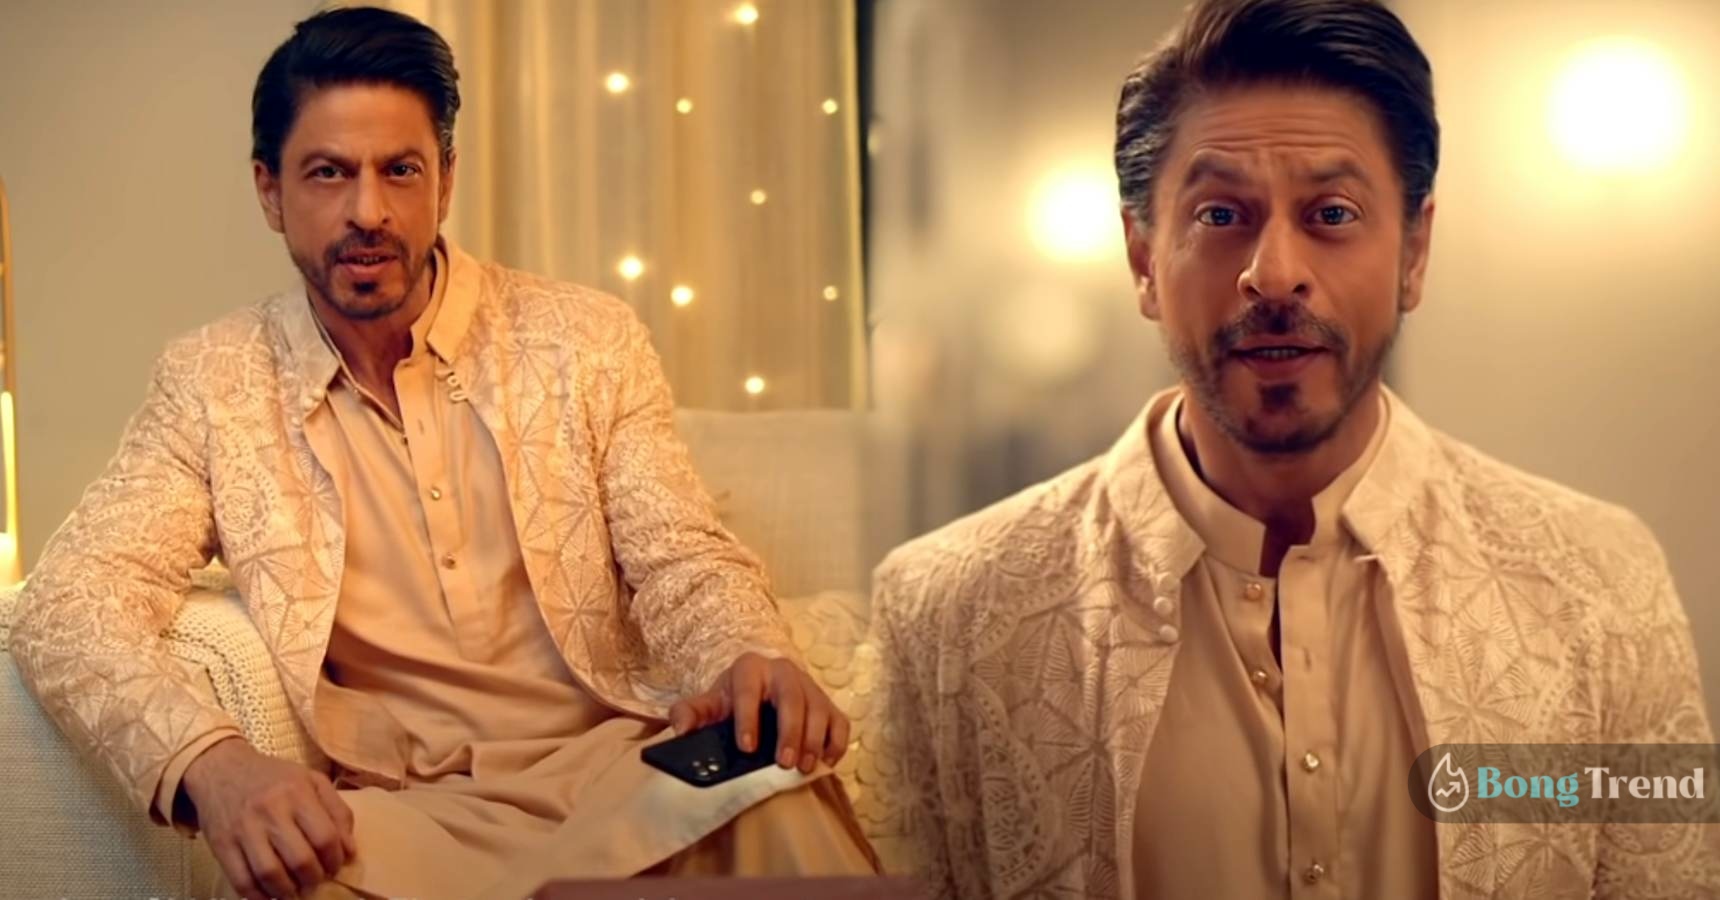 শাহরুখ খান,ক্যাডবেরি,দীপাবলী,Shahrukh Khan,Not Just A Cadbury Ad,Diarymilk,Shahrukh Khan New Ad,Shahrukh Khan Deewali Ad,Shahrukh Khan Deewali Ad for everyone